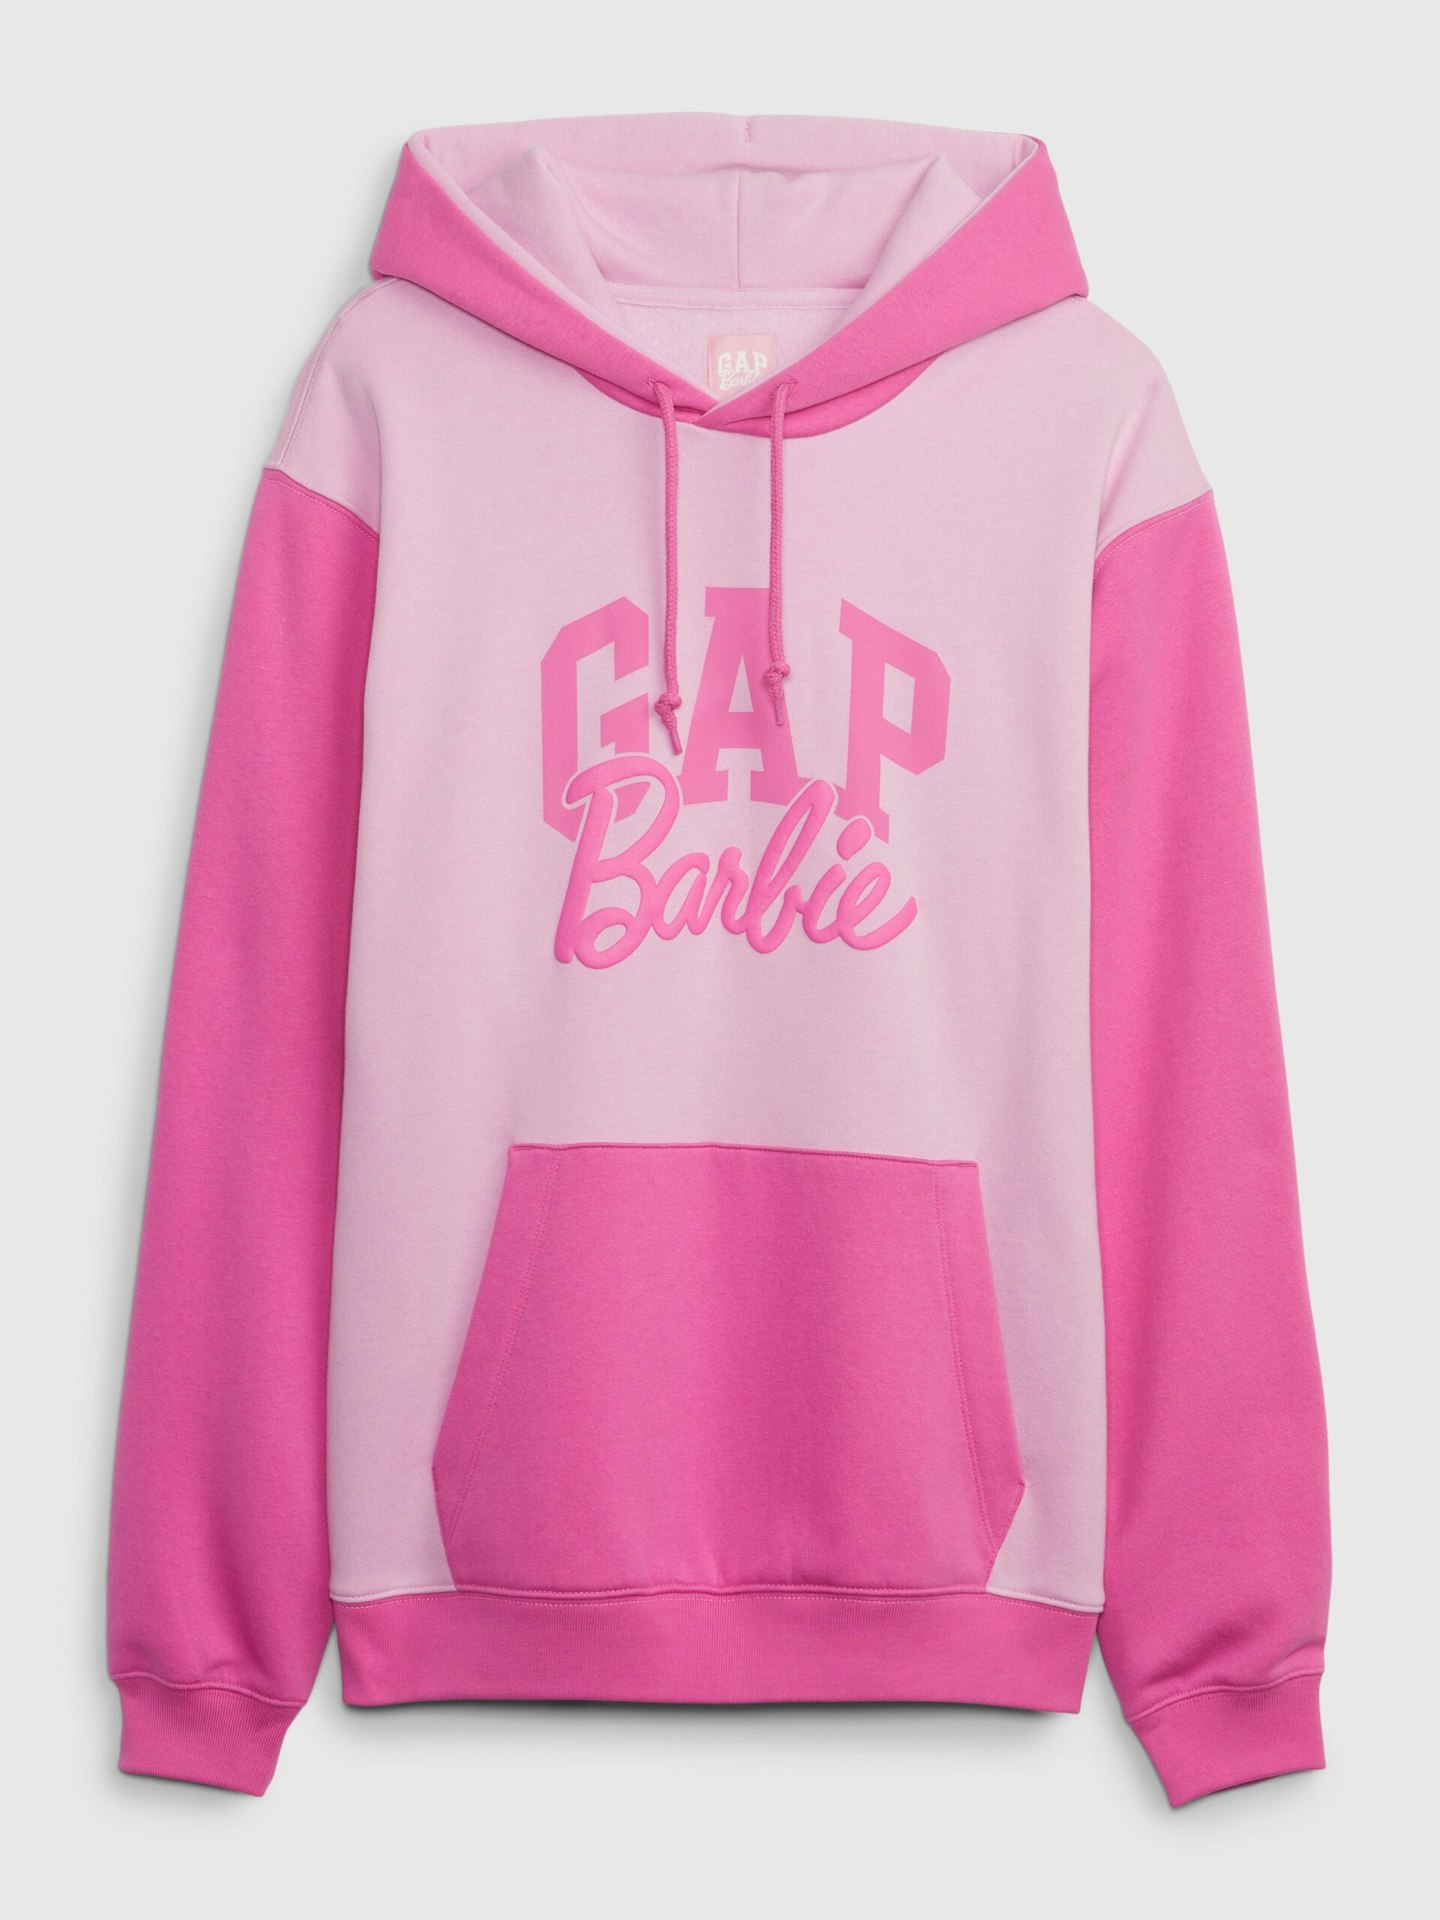 gap barbie hoodie